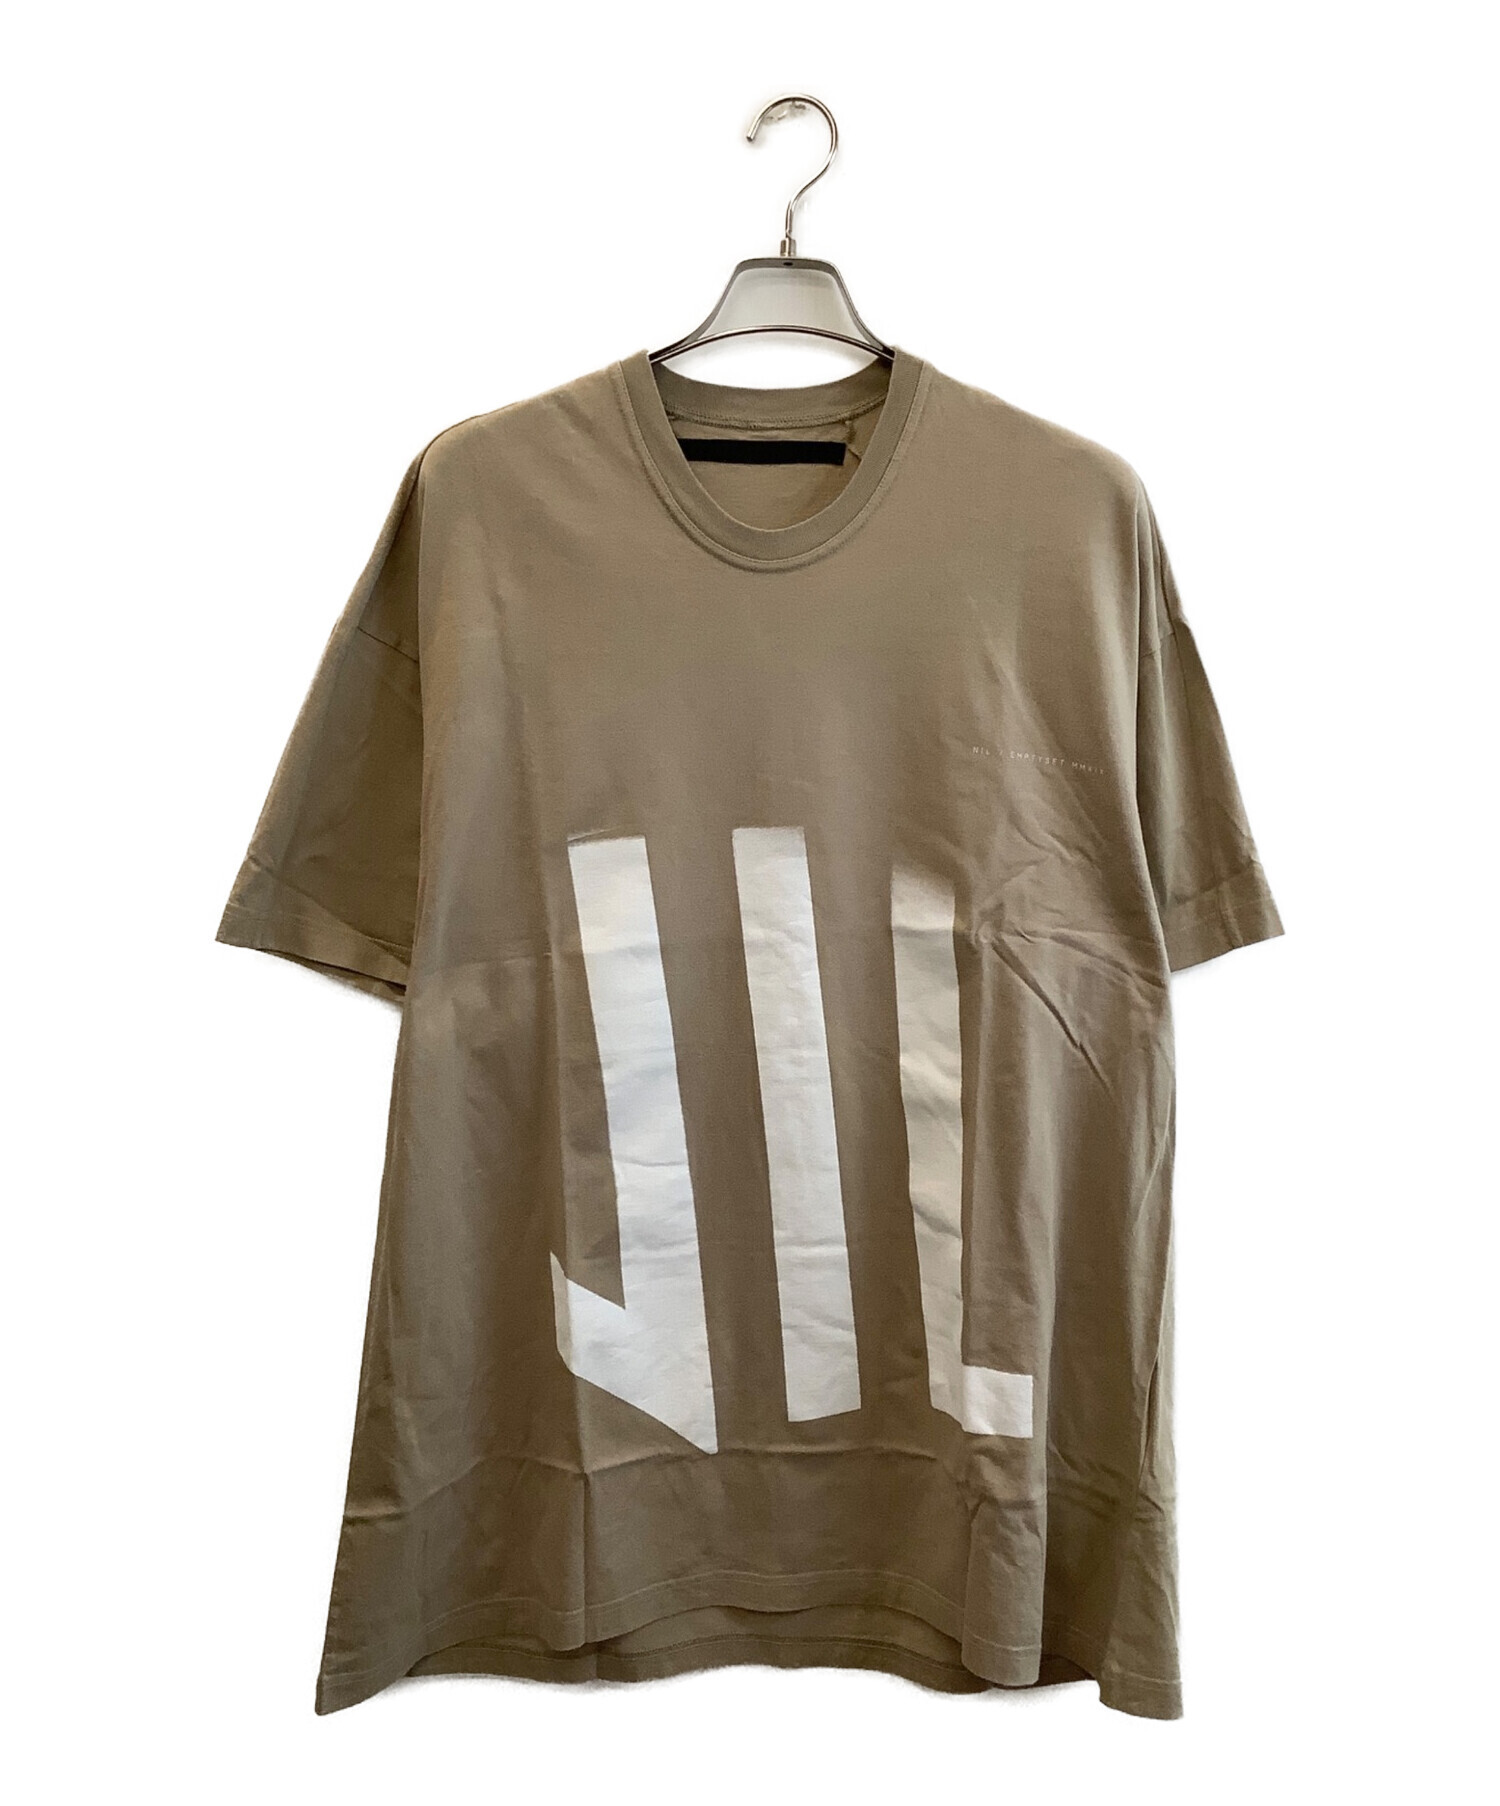 NILOS ニルズ 15-16 FW empty-set カットソー Tシャツ 520CPM12 サイズ 